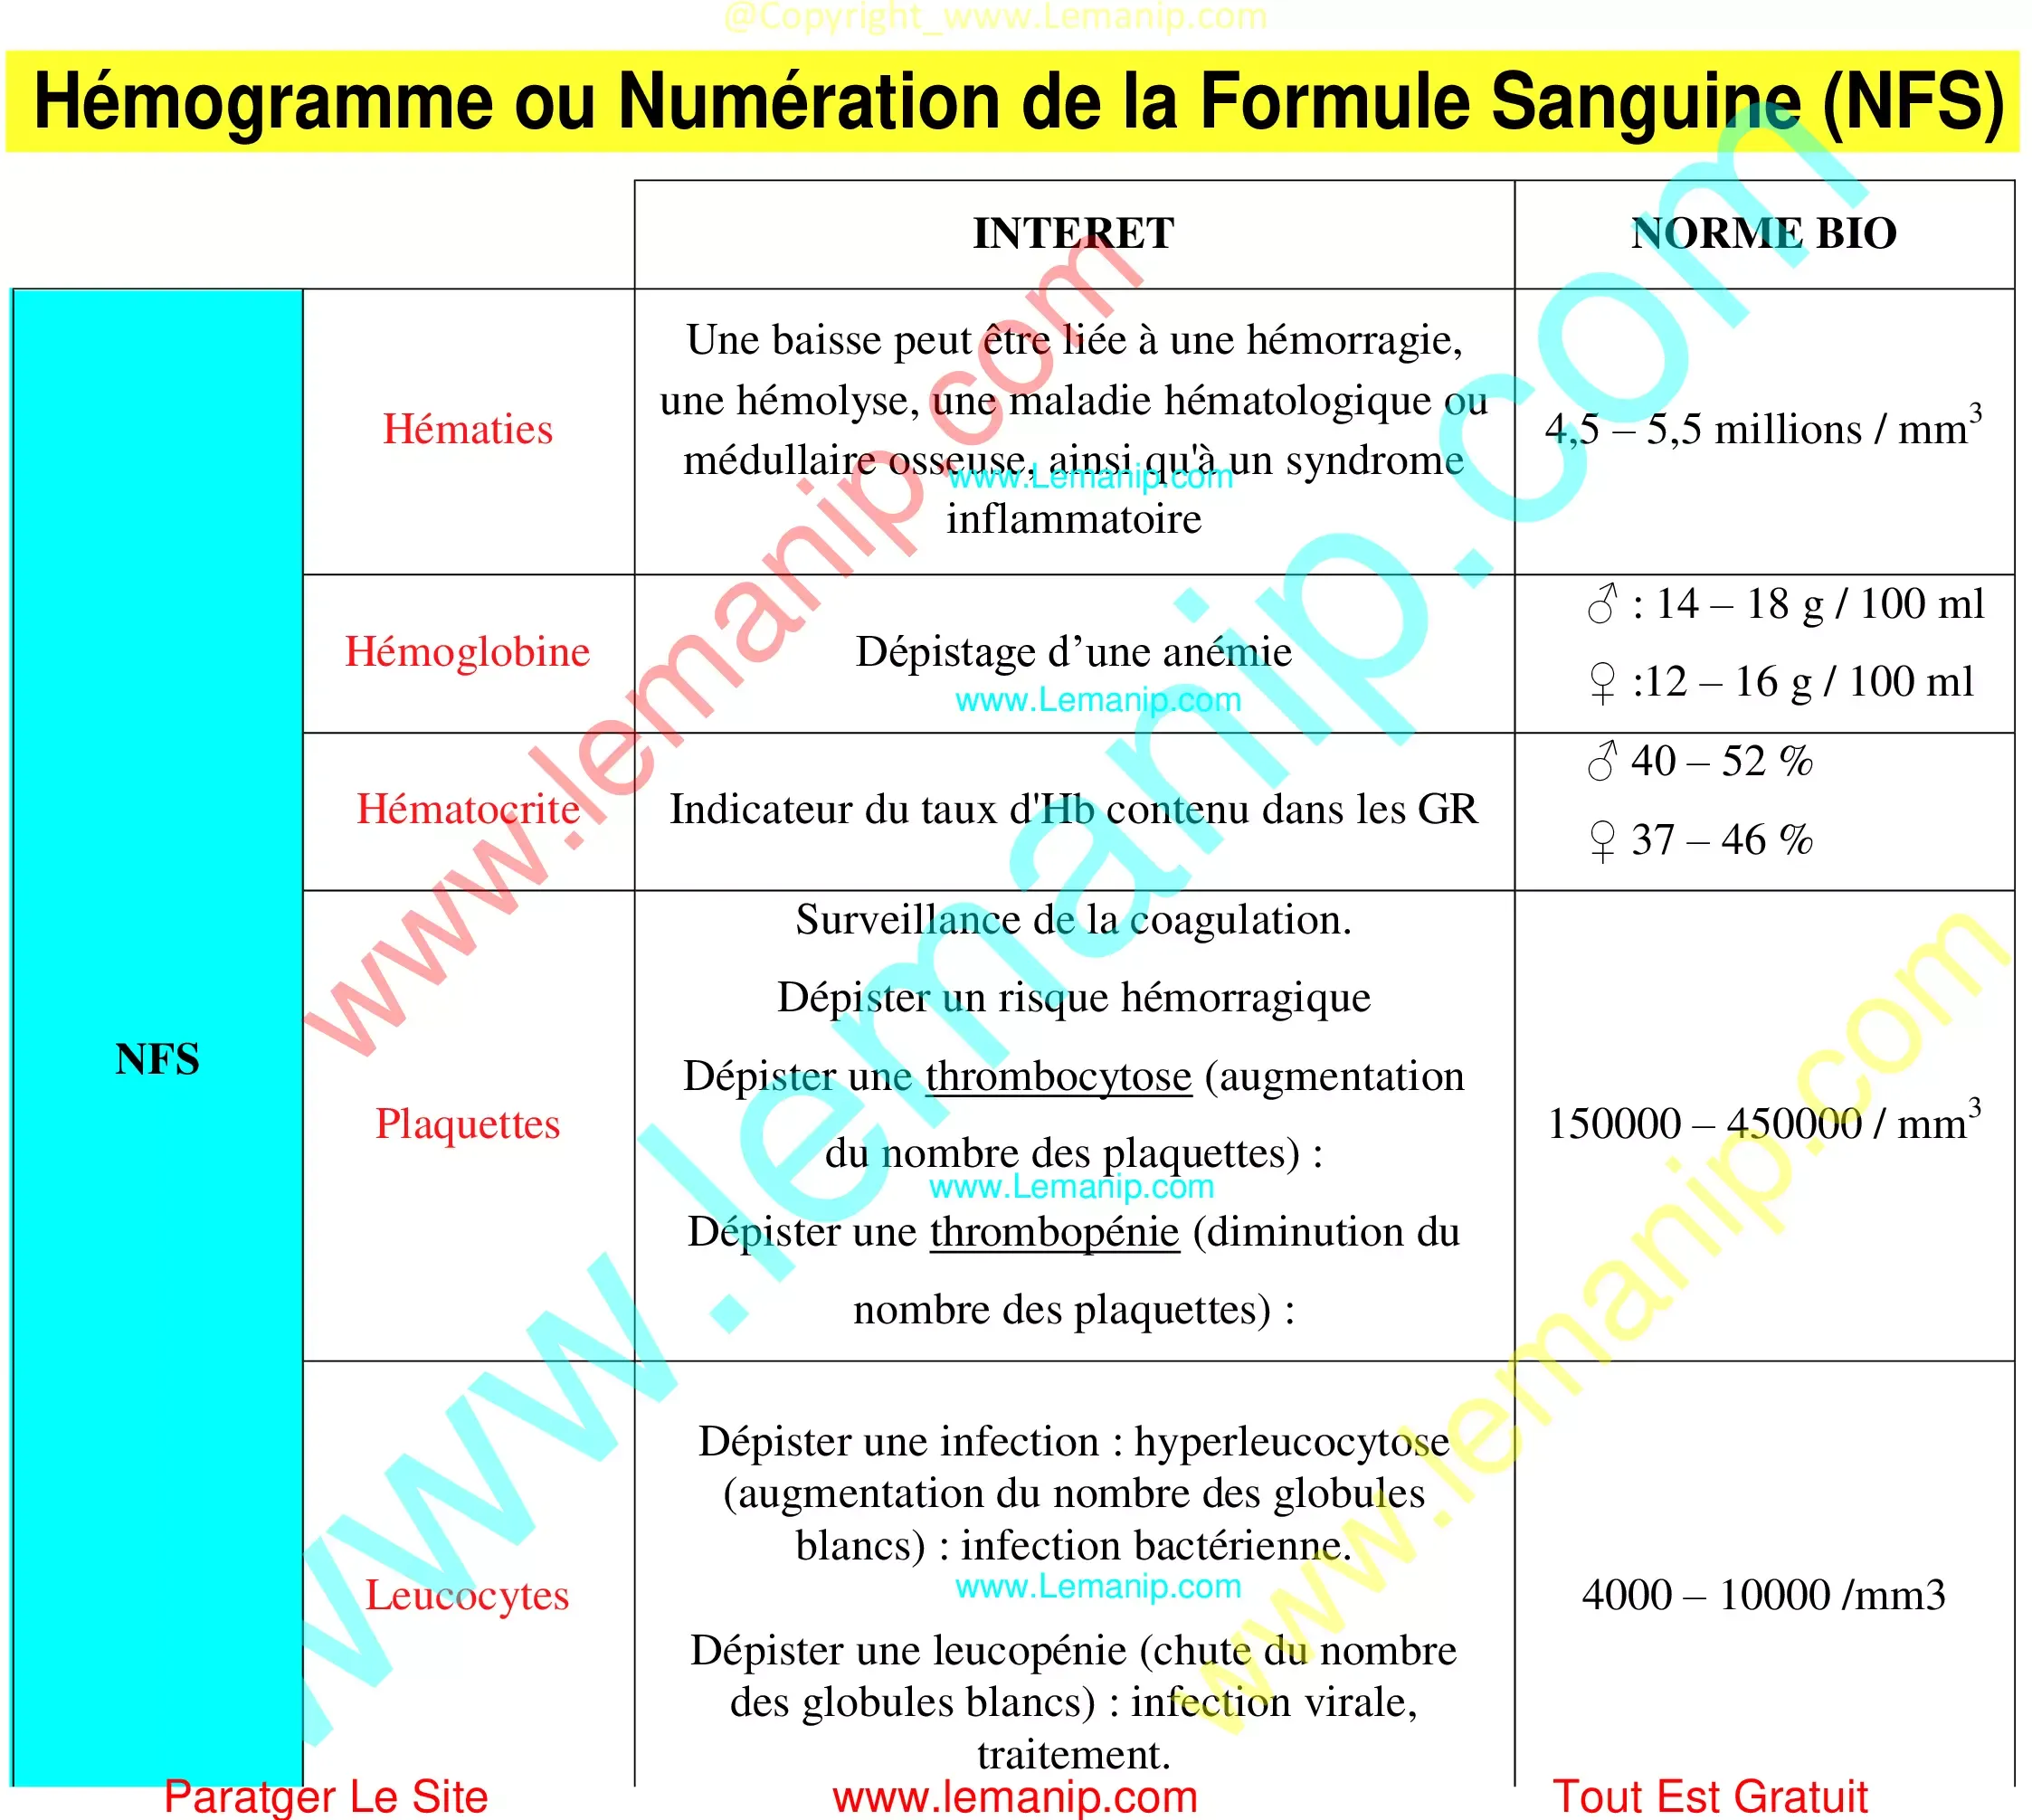 Hémogramme Numération de la Formule Sanguine (NFS)